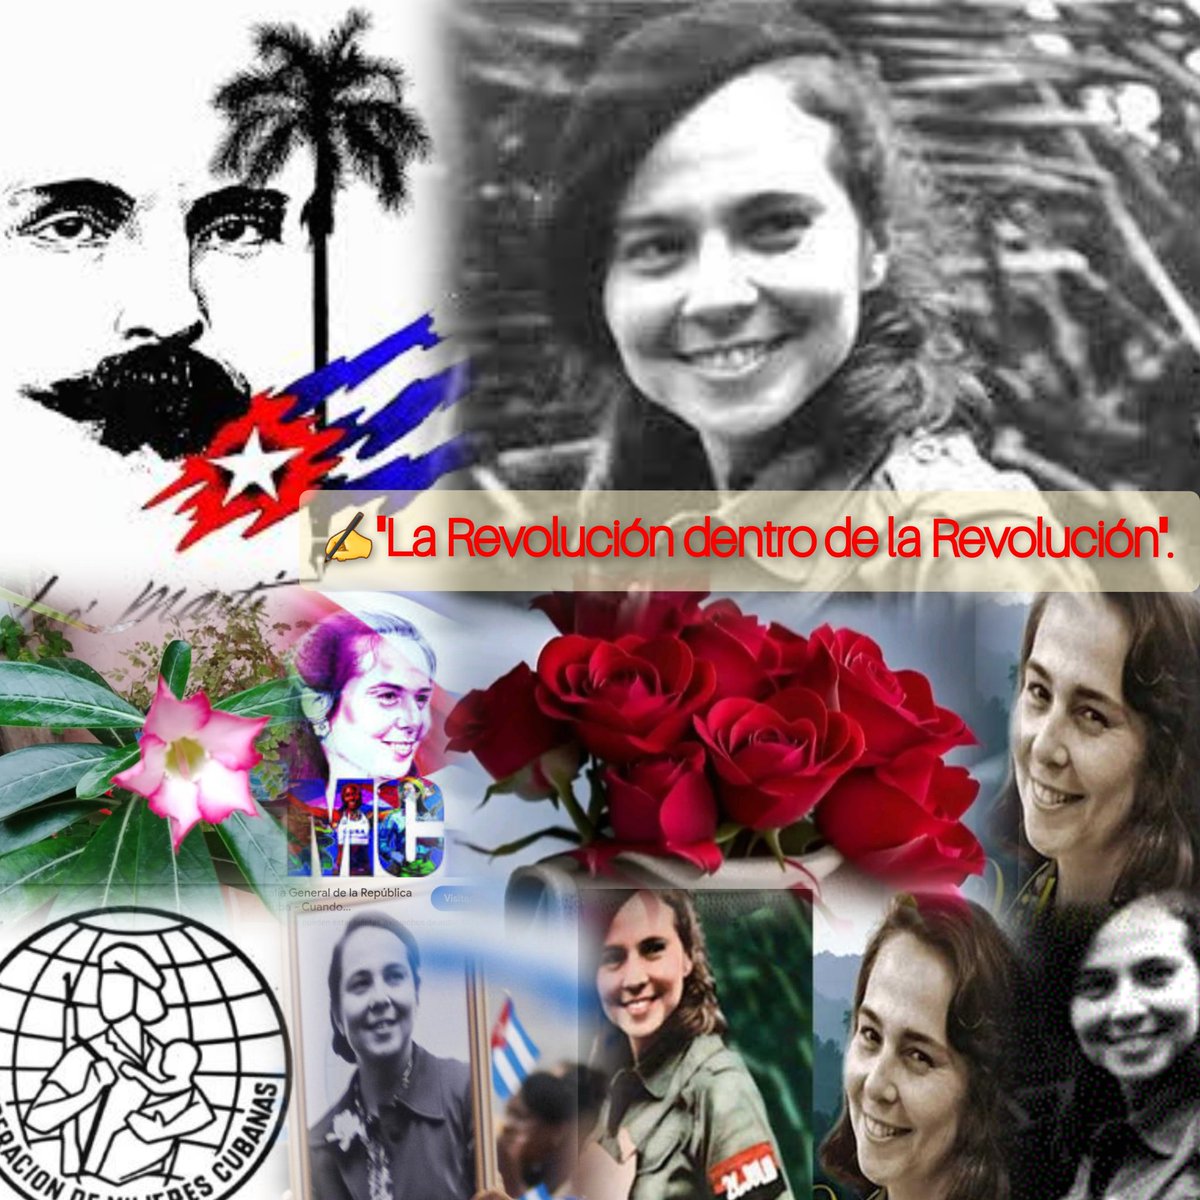 'El ejemplo de Vilma es hoy más necesario que nunca' Fidel 
#VilmaVive 
#MujeresEnRevolución